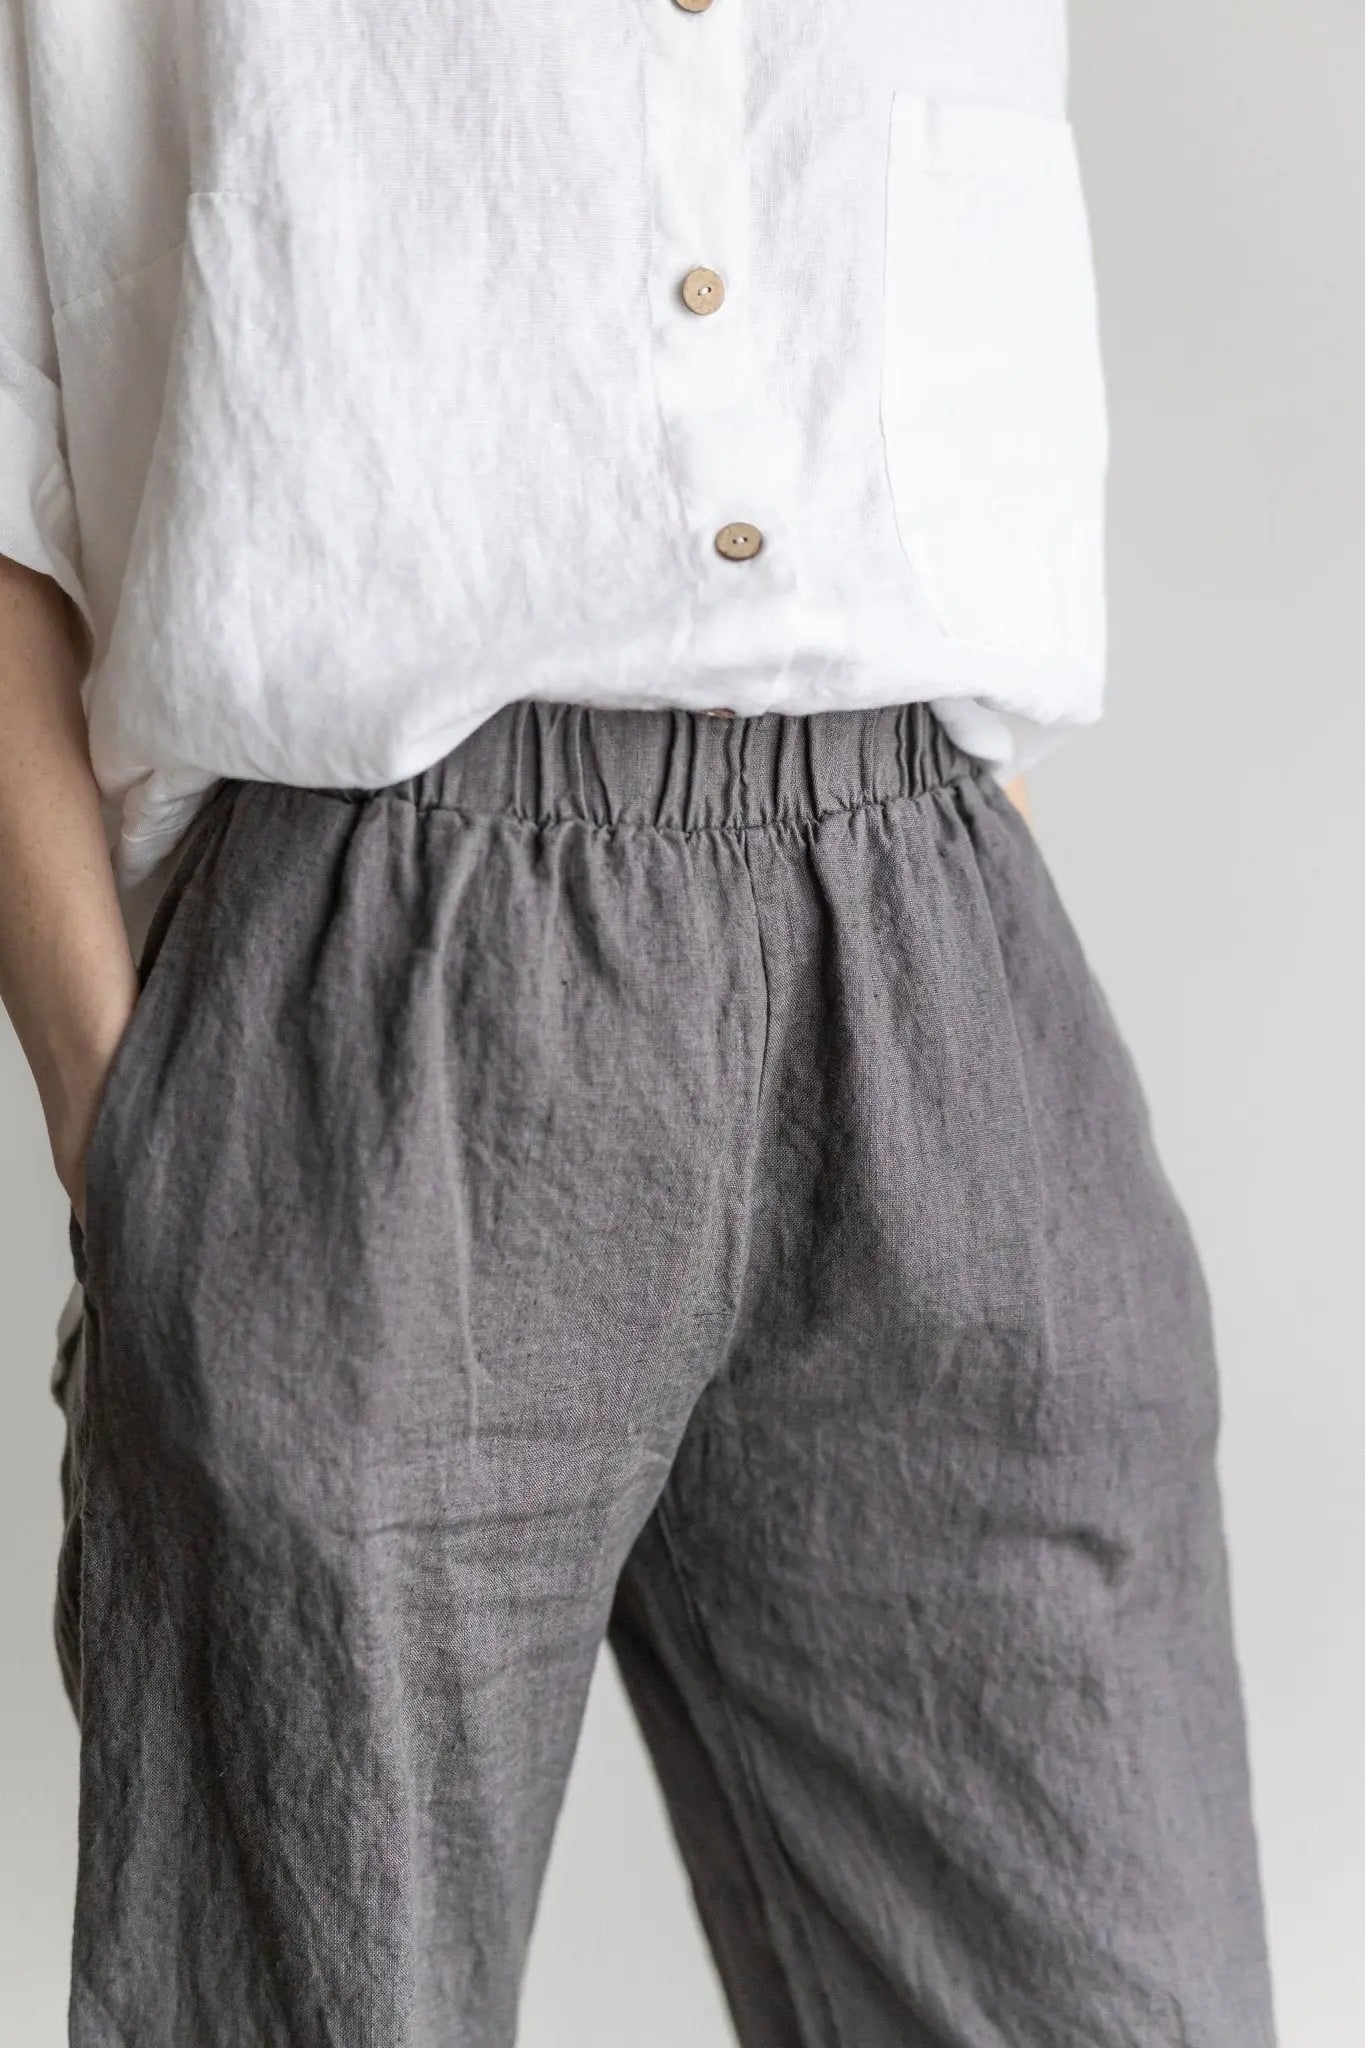 Loose Linen Pants - Epic Linen luxury linen